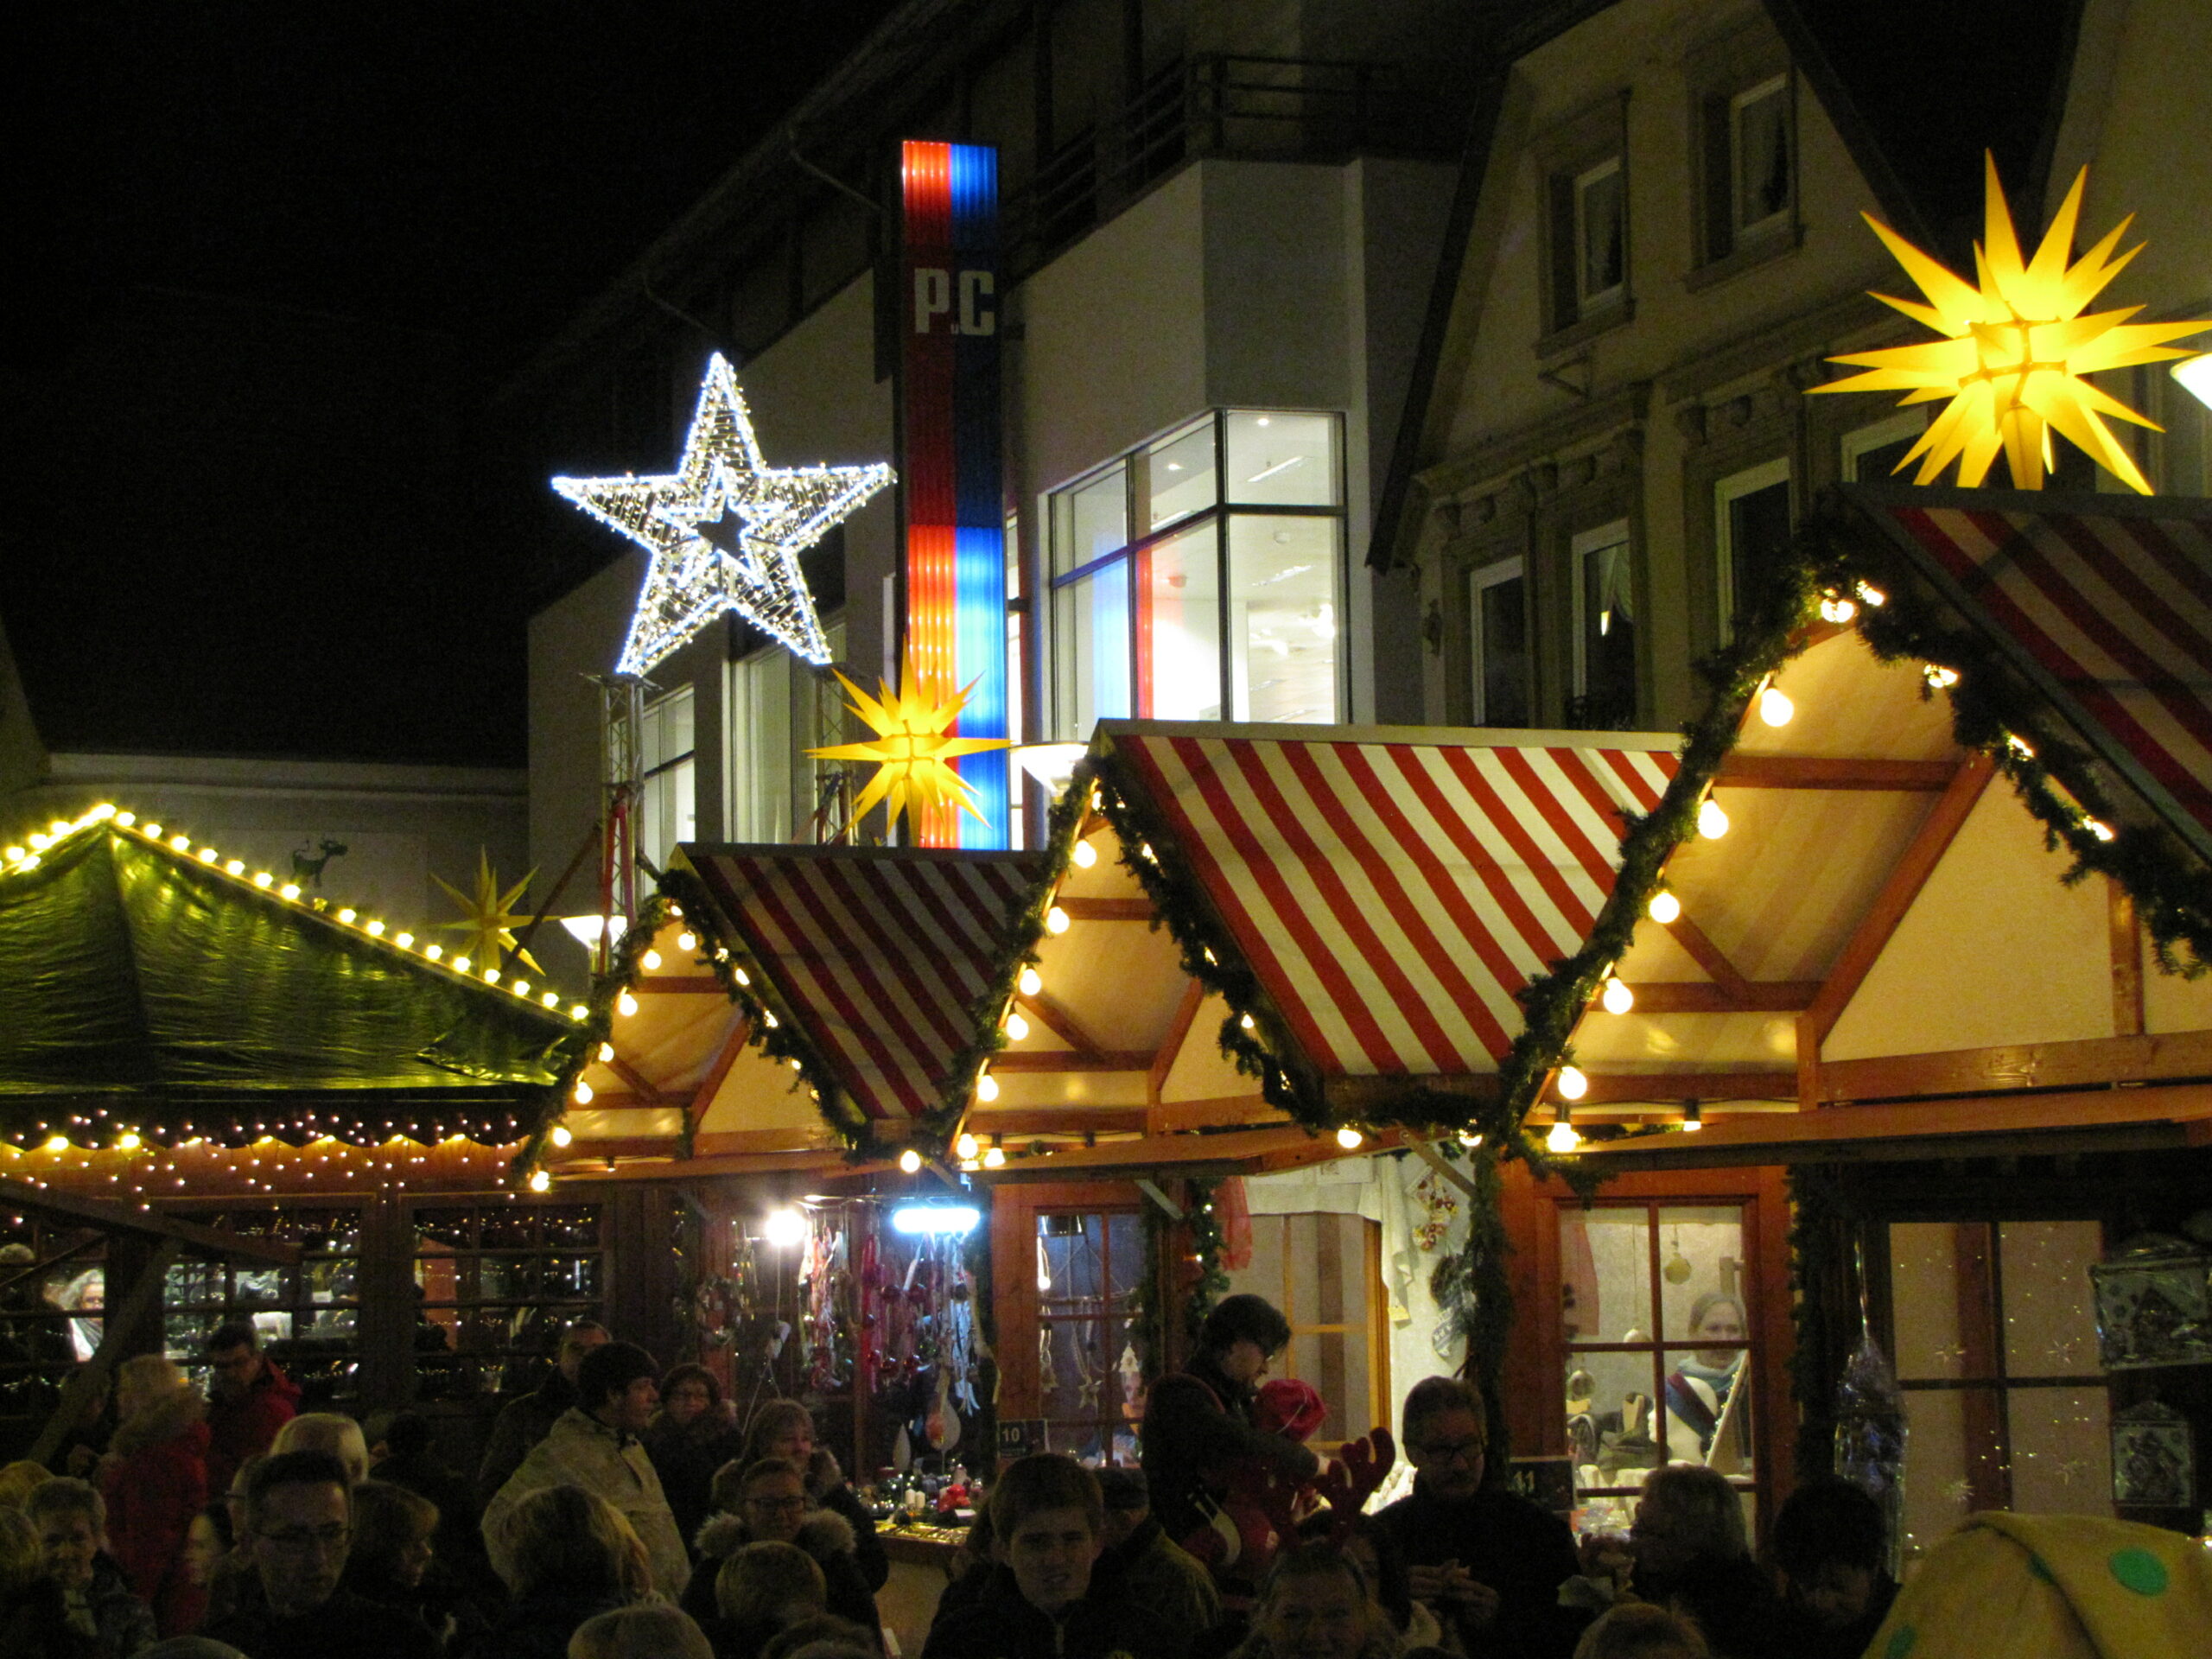 Sternengasse blinkt – Weihnachtsmarkt Lünen heute zeitgleich mit Dortmund gestartet